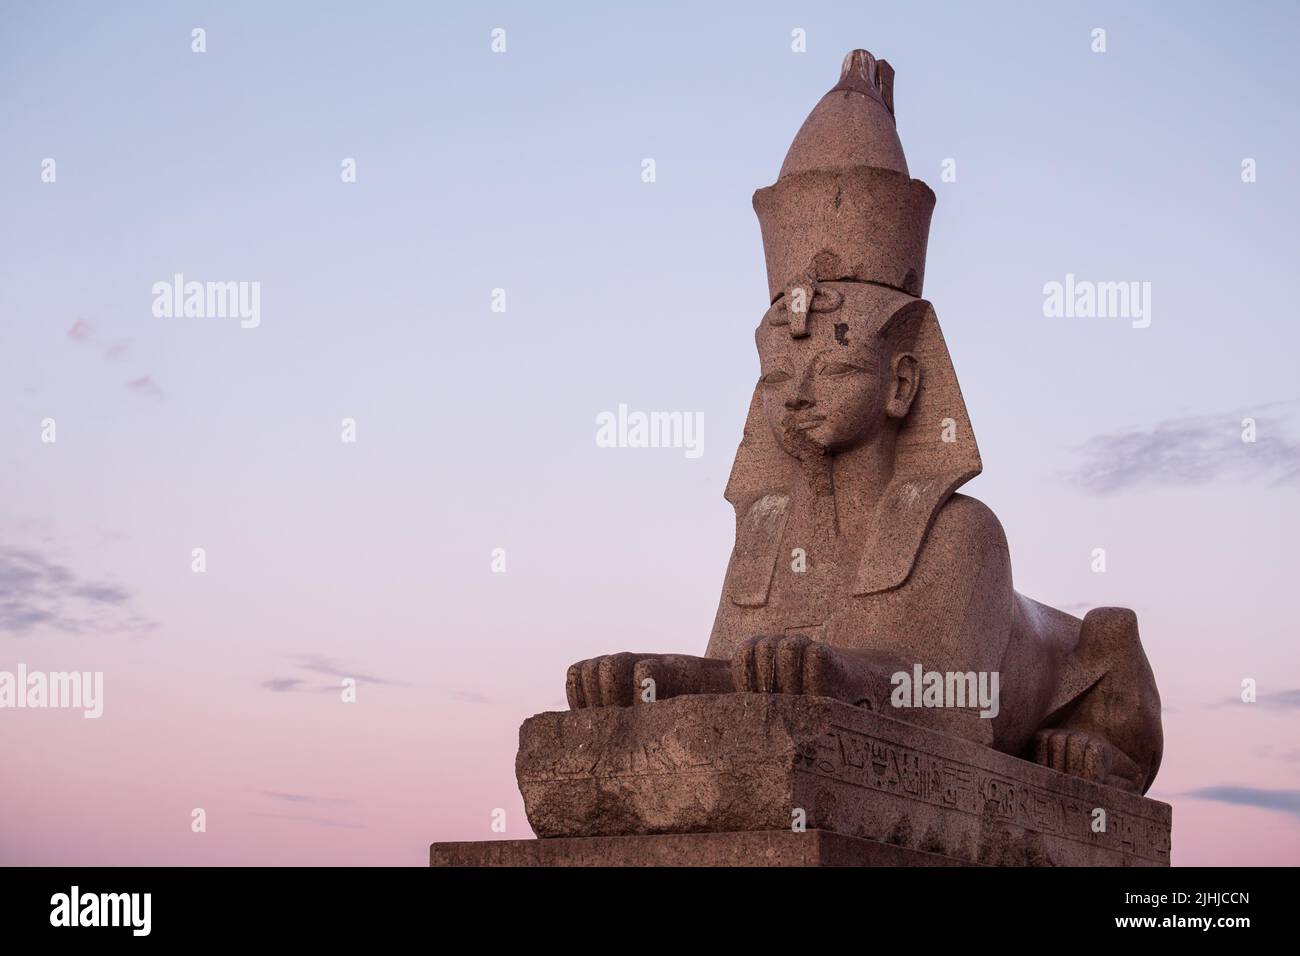 Sphinx égyptien sur le remblai de l'université à Saint-Pétersbourg. Nuit blanche, aube Banque D'Images